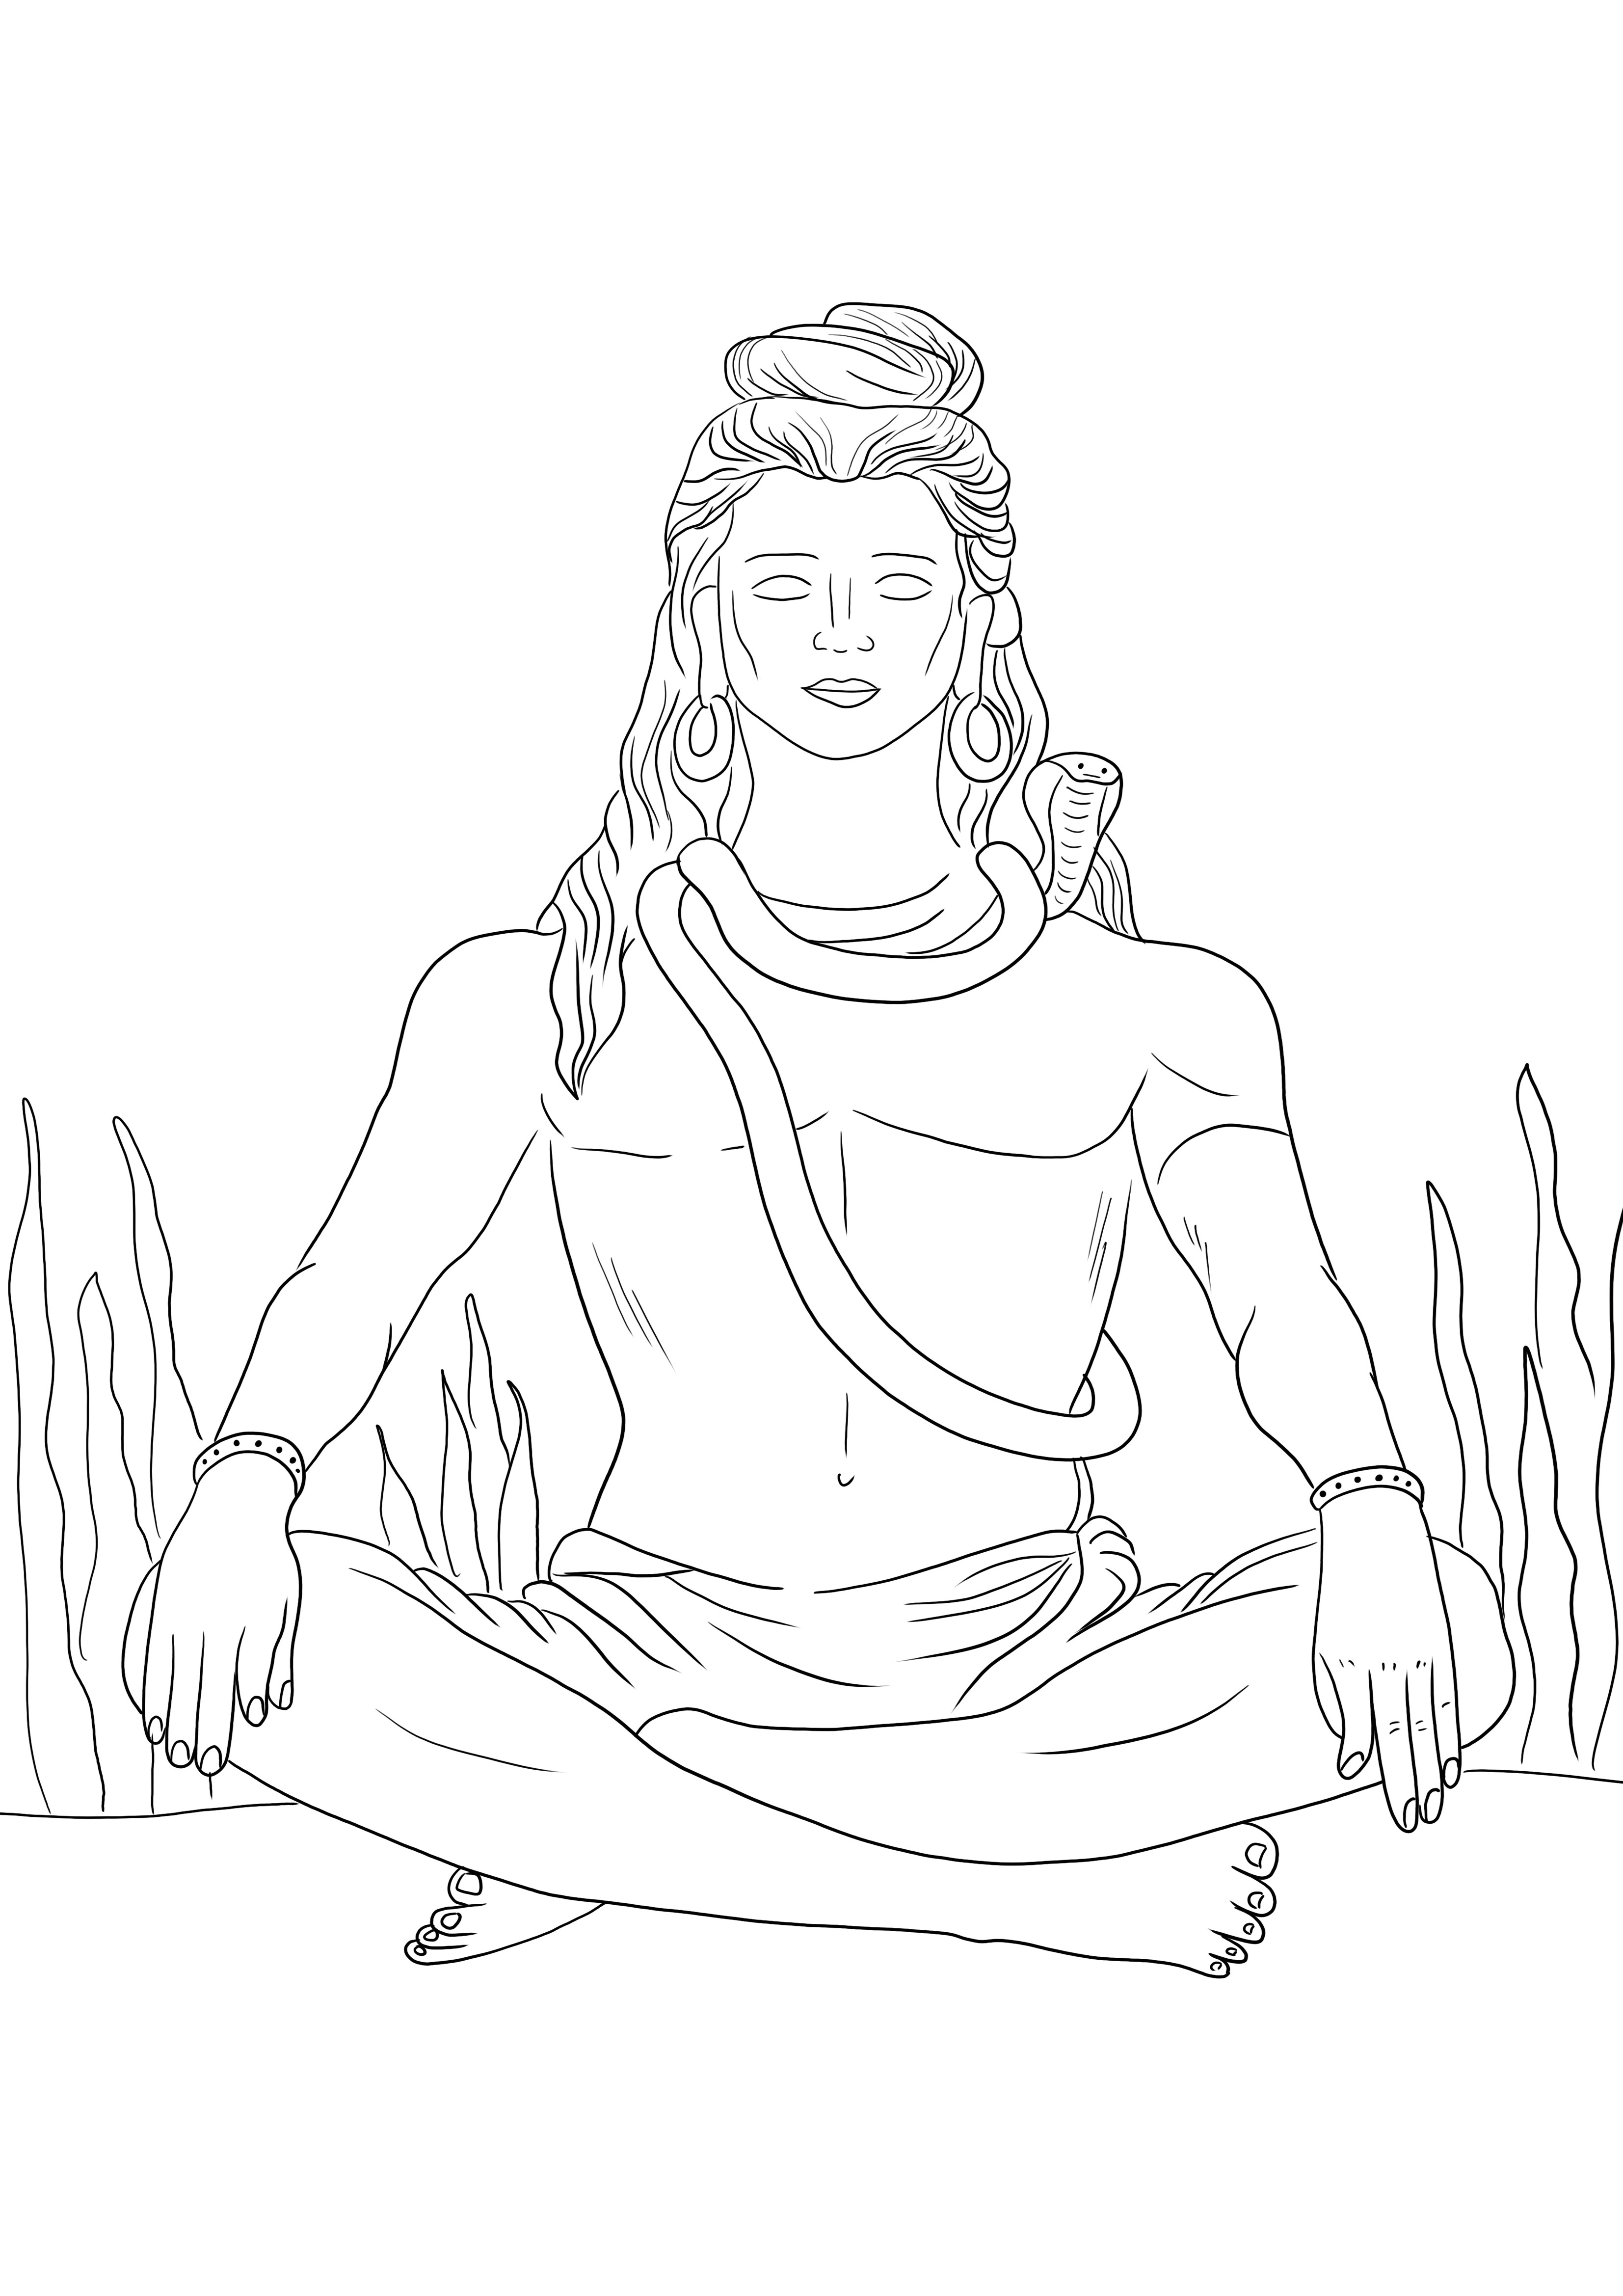 Lord Shiva ücretsiz olarak yazdırılabilir, renklendirmeye hazırdır ve ücretsiz olarak basılabilir